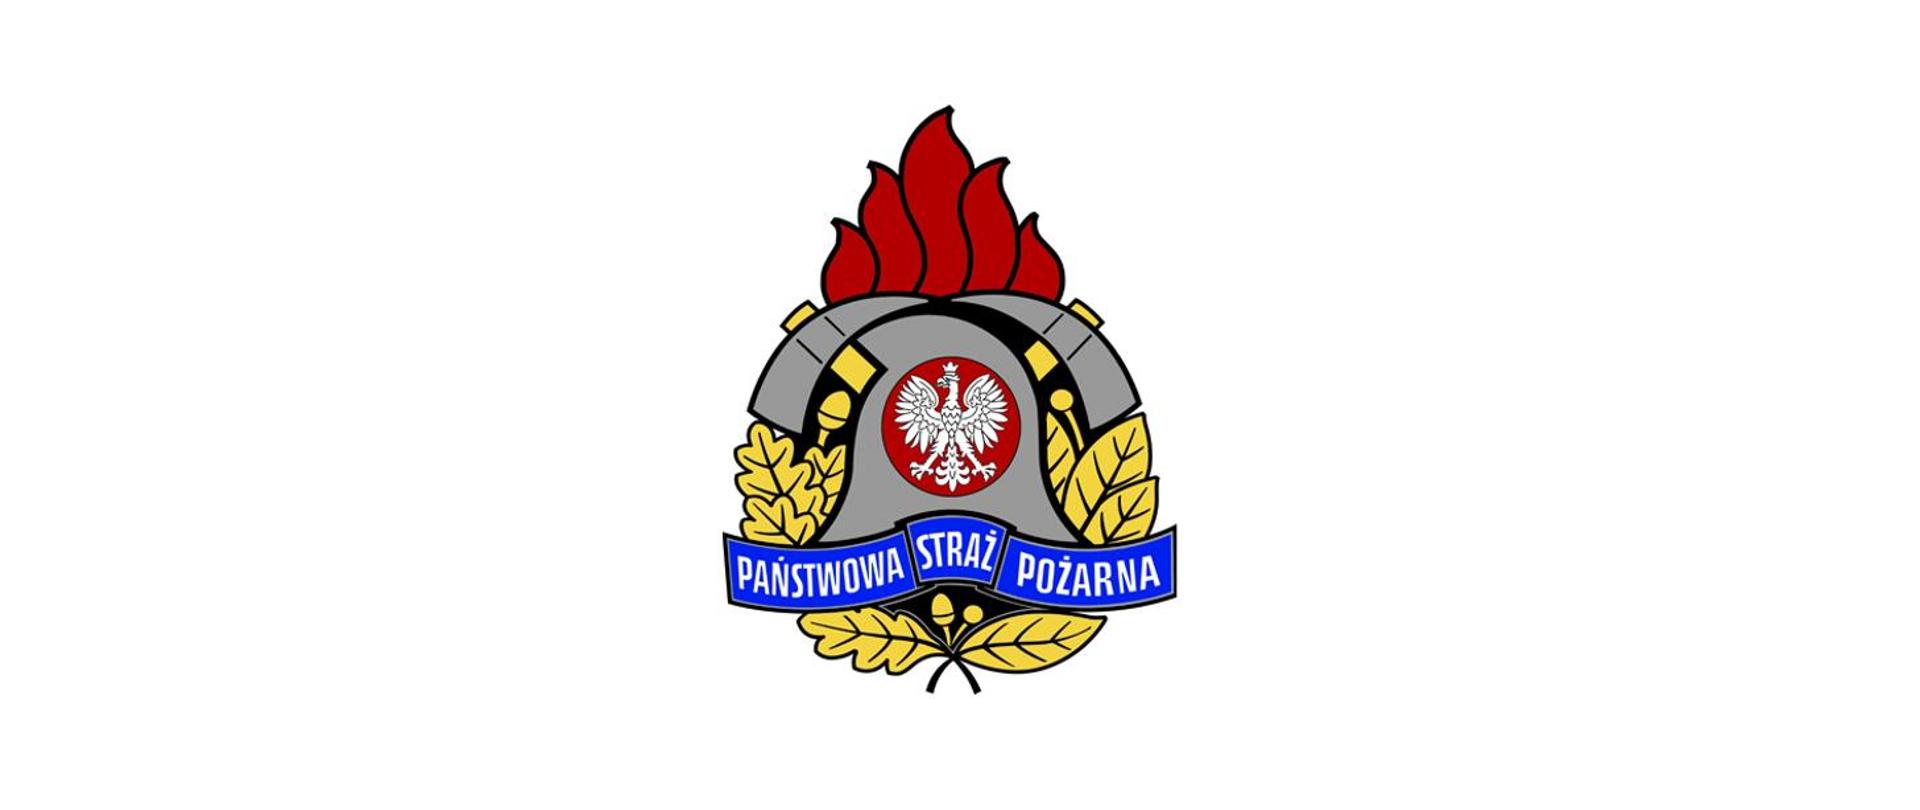 Slider – logotyp PSP, w centrum znajduje się godło Państwa Polskiego – Orzeł Biały. Hełm strażacki, który okalają dwa toporki. Całość dopełnia złoty wieniec z liści oraz owoców dębu i wawrzynu.